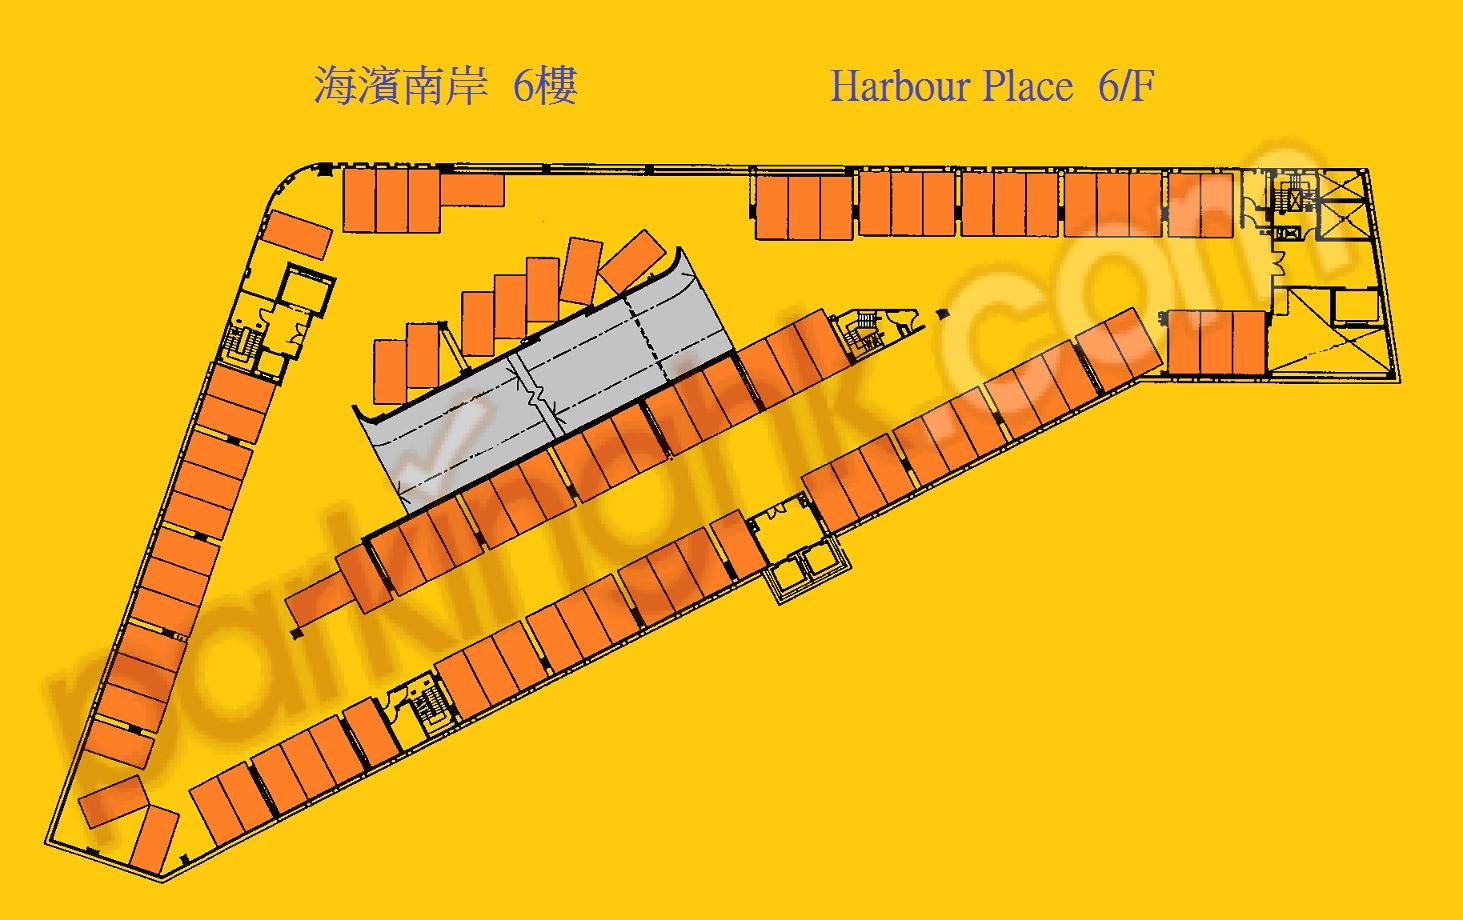  Yau Yat Chuen Carpark  Parc Oasis Road  Parc Oasis  Floor plan 香港車位.com ParkingHK.com